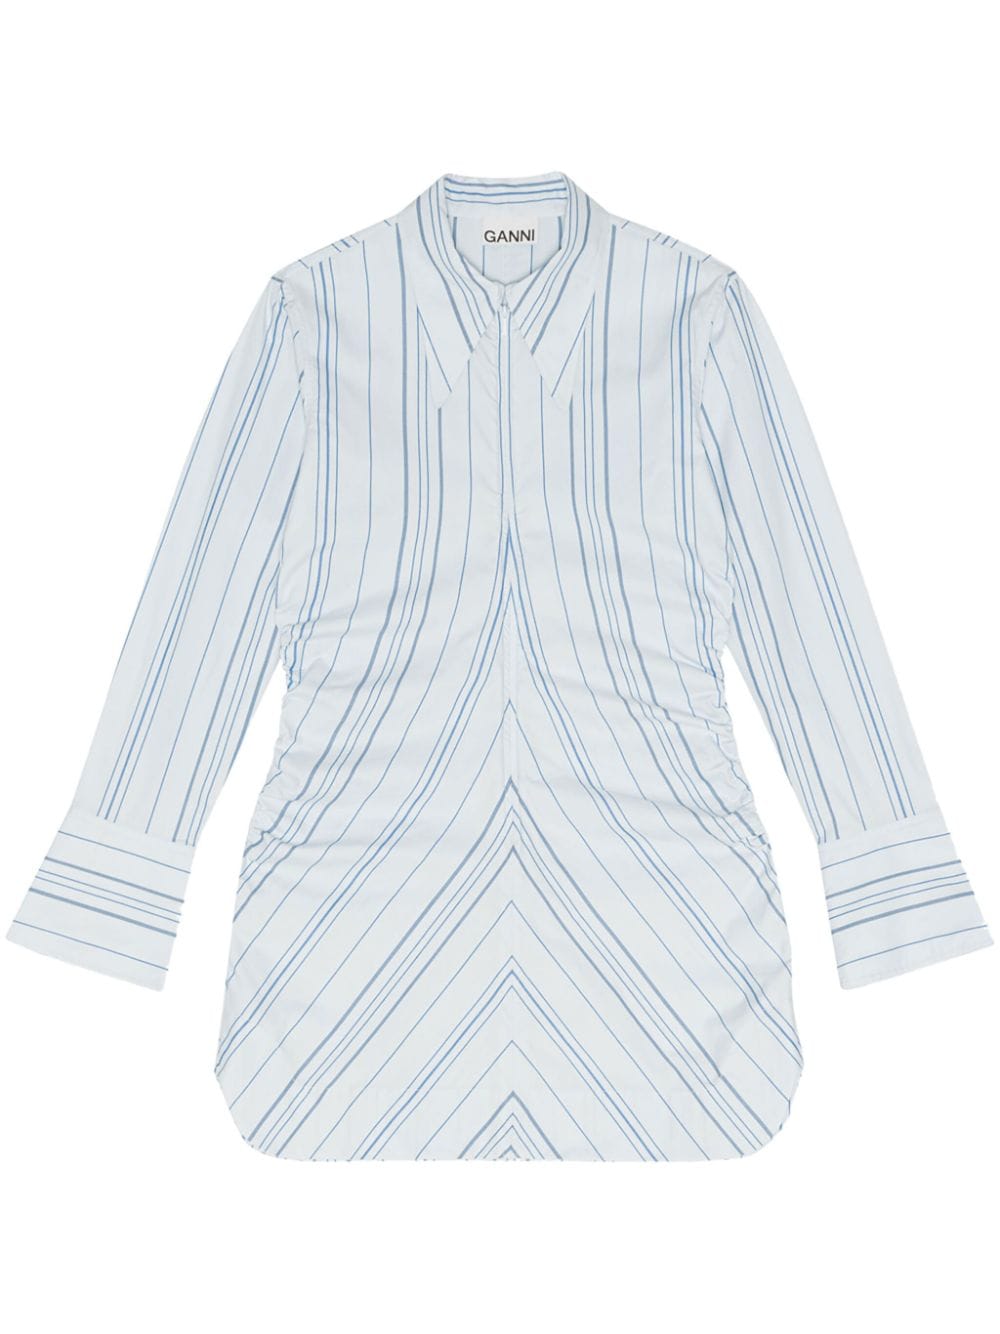 GANNI striped shirt dress - White von GANNI